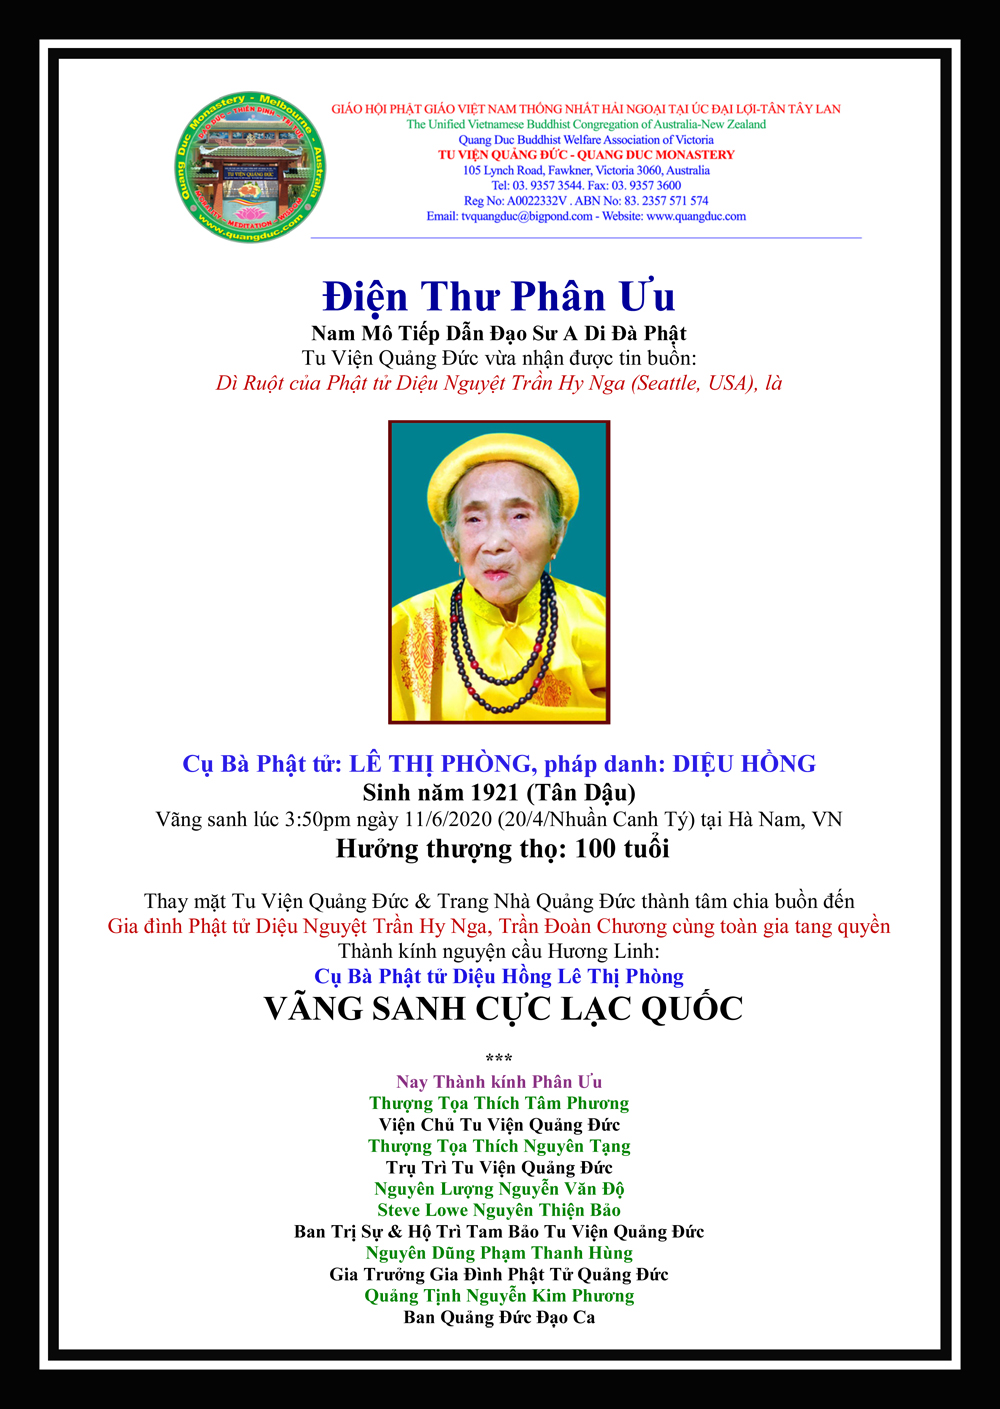 Dien Thu Phan Uu_Cu Ba Le Thi Phong_Dieu Hong-2